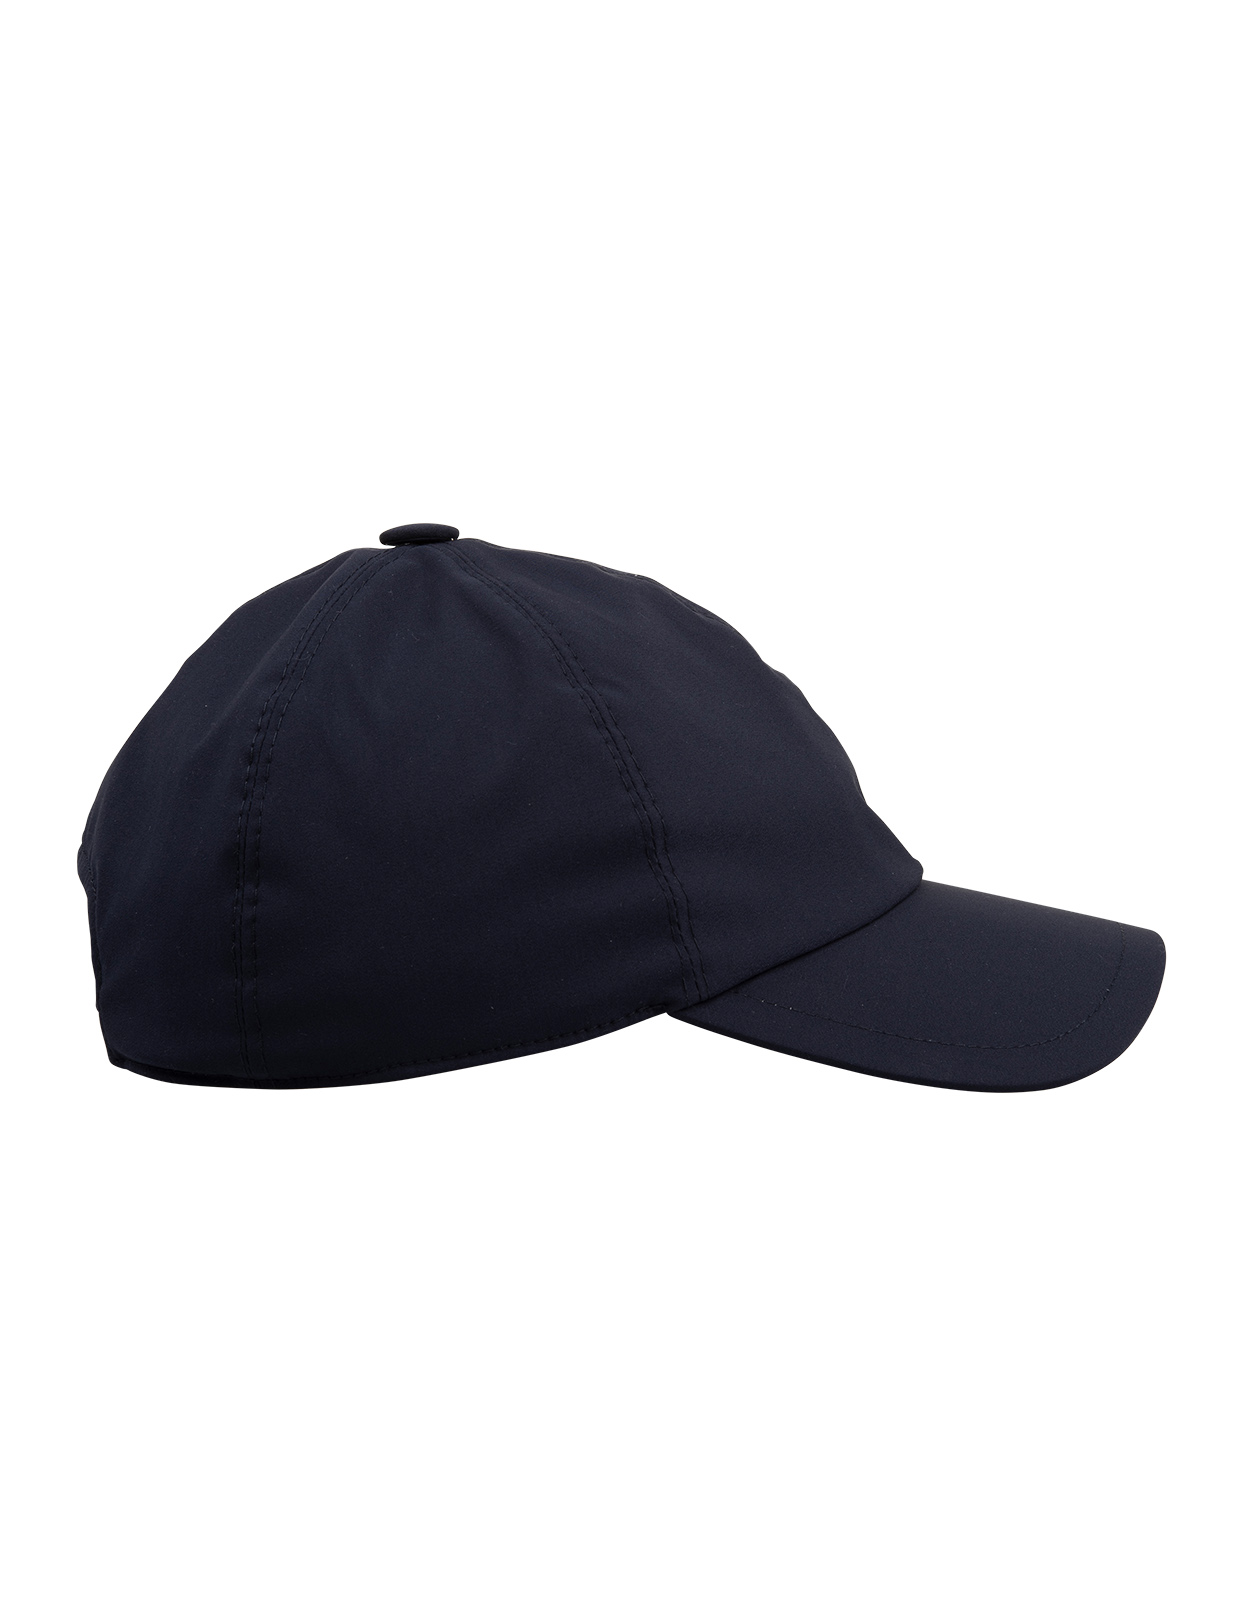 Cappello Da Baseball Uomo In Tessuto Tecnico Blu Navy FEDELI | 008024